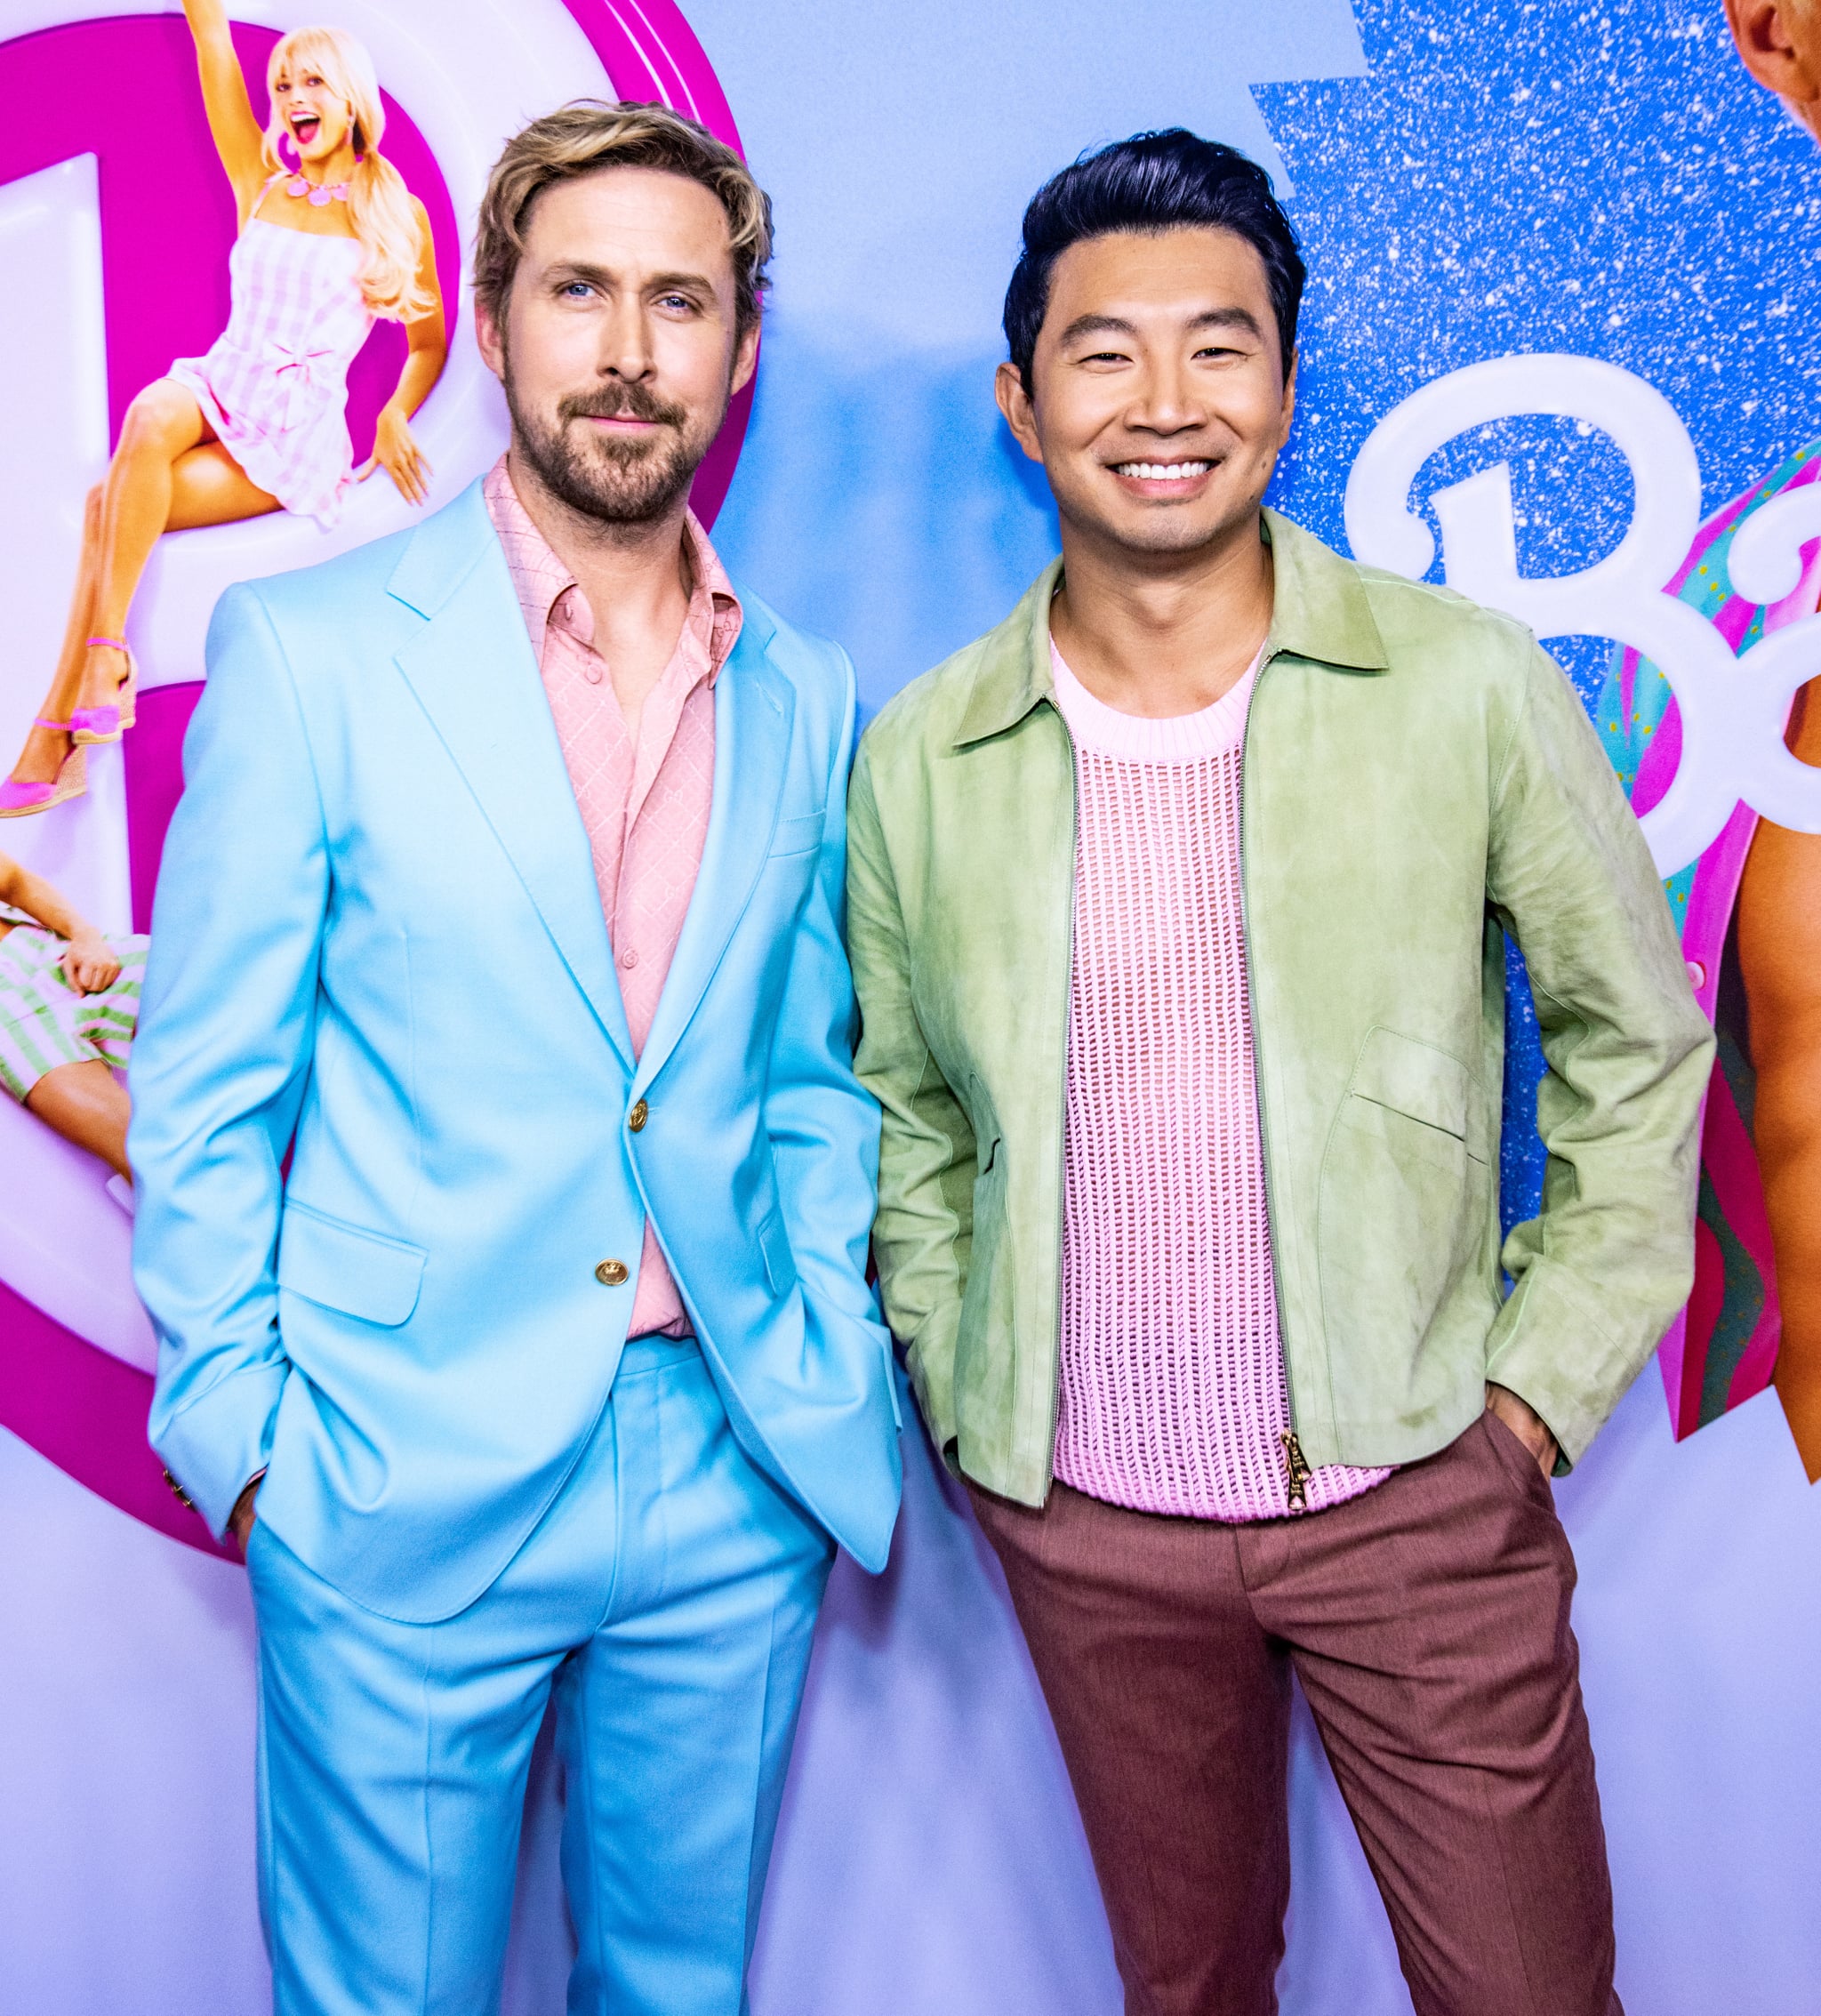 TORONTO, ONTARIO - JUNE 28: (L-R) Ryan Gosling and Simu Liu attend a "Barbie" press event in Canada.